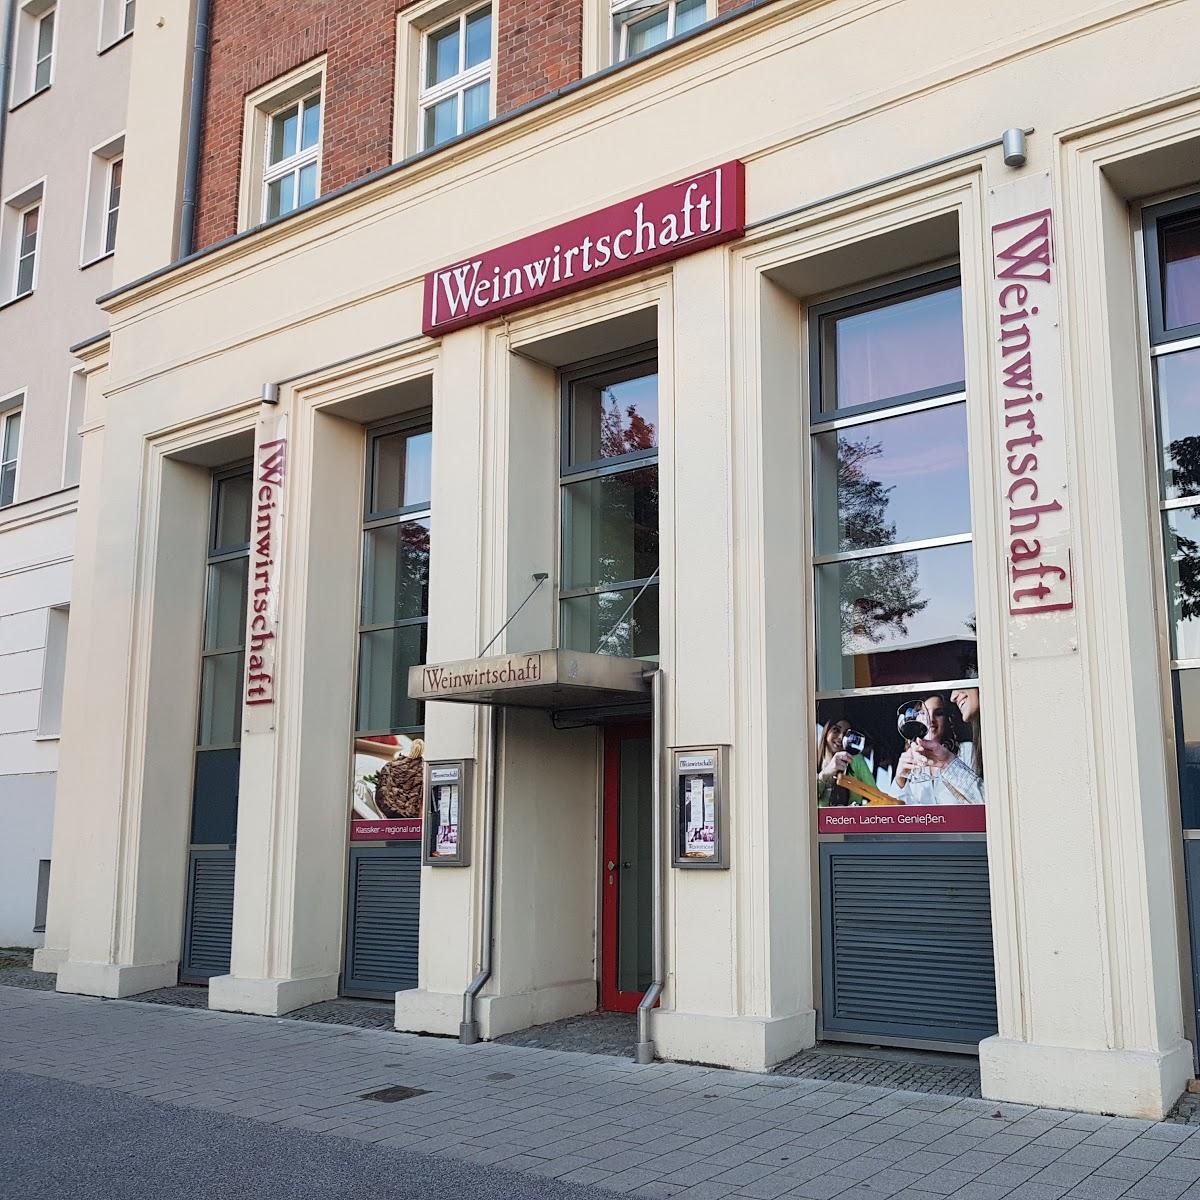 Restaurant "Restaurant Gasthouse" in  Stralsund